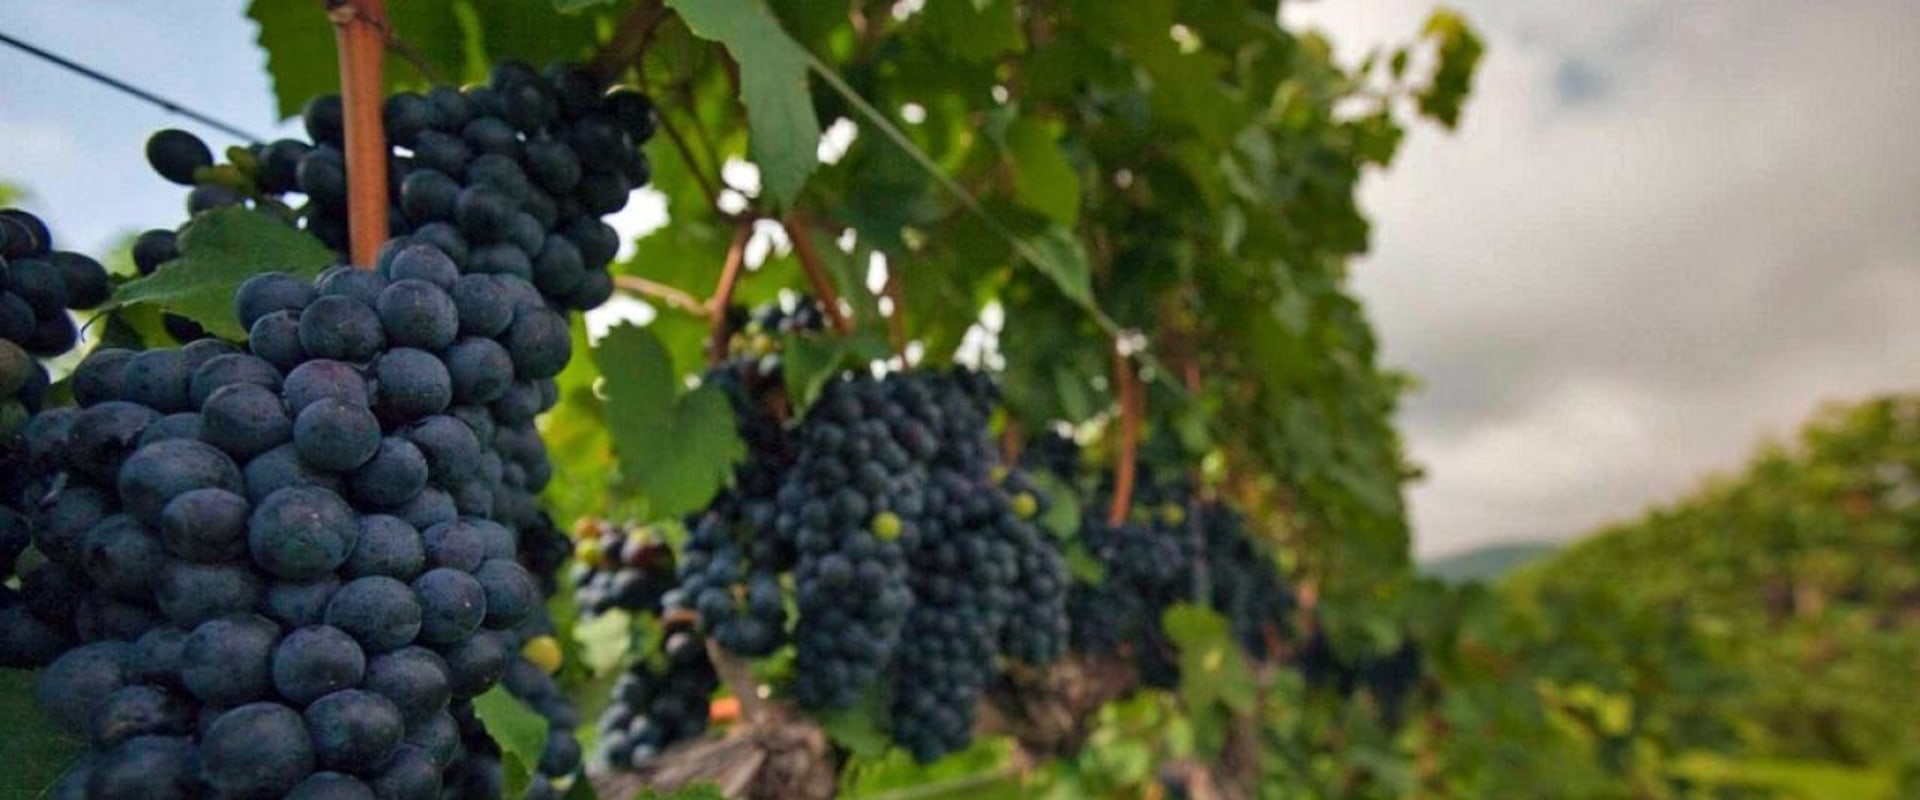 Exploring the Grape Varieties in Dulles, Virginia's Vineyards